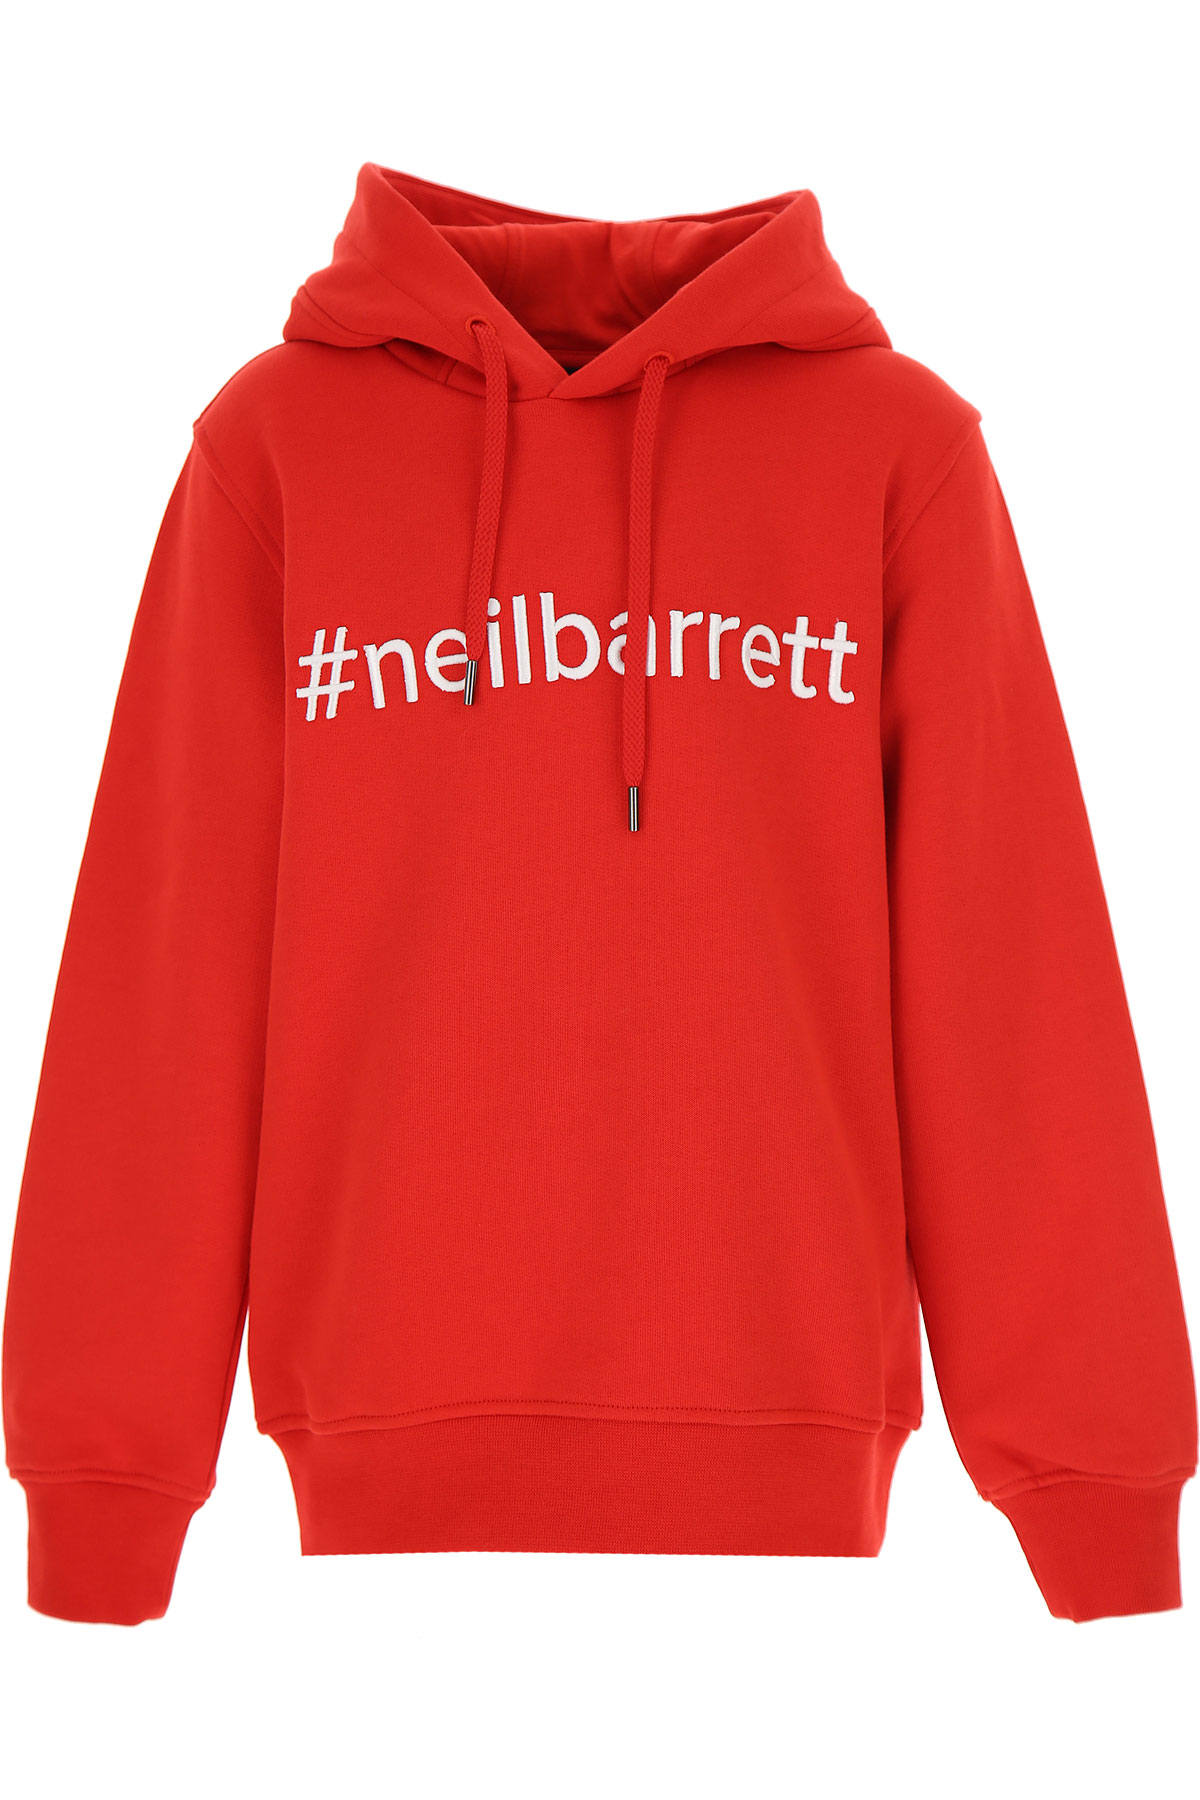 Neil Barrett Kinder Sweatshirt & Kapuzenpullover für Jungen Günstig im Sale, Rot, Baumwolle, 2017, 10Y 12Y 8Y